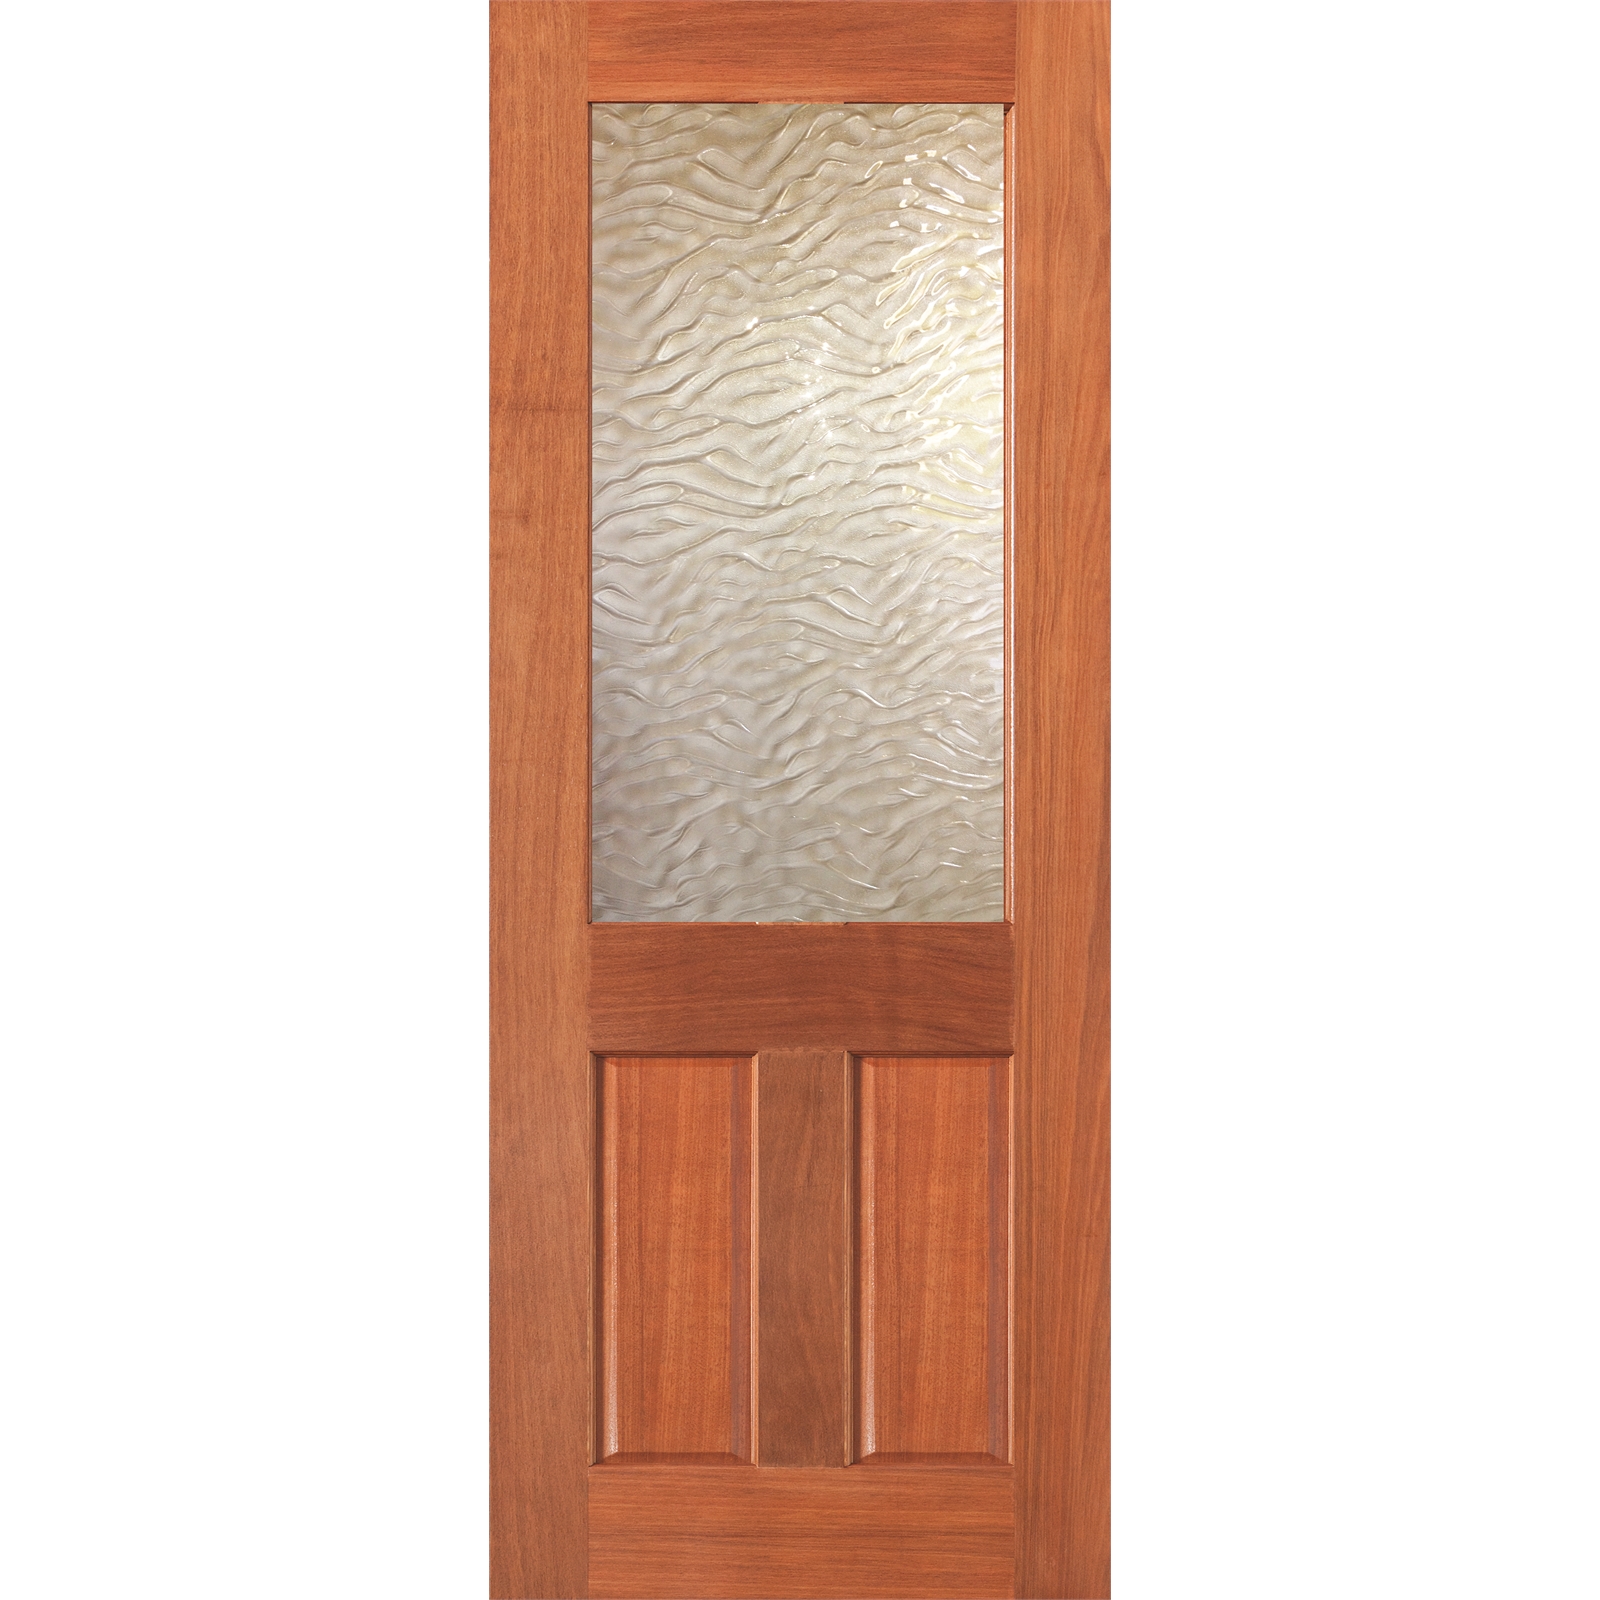 Woodcraft Doors 2040 x 820 x 40mm Wave Safety Glass Half Lite Internal Door